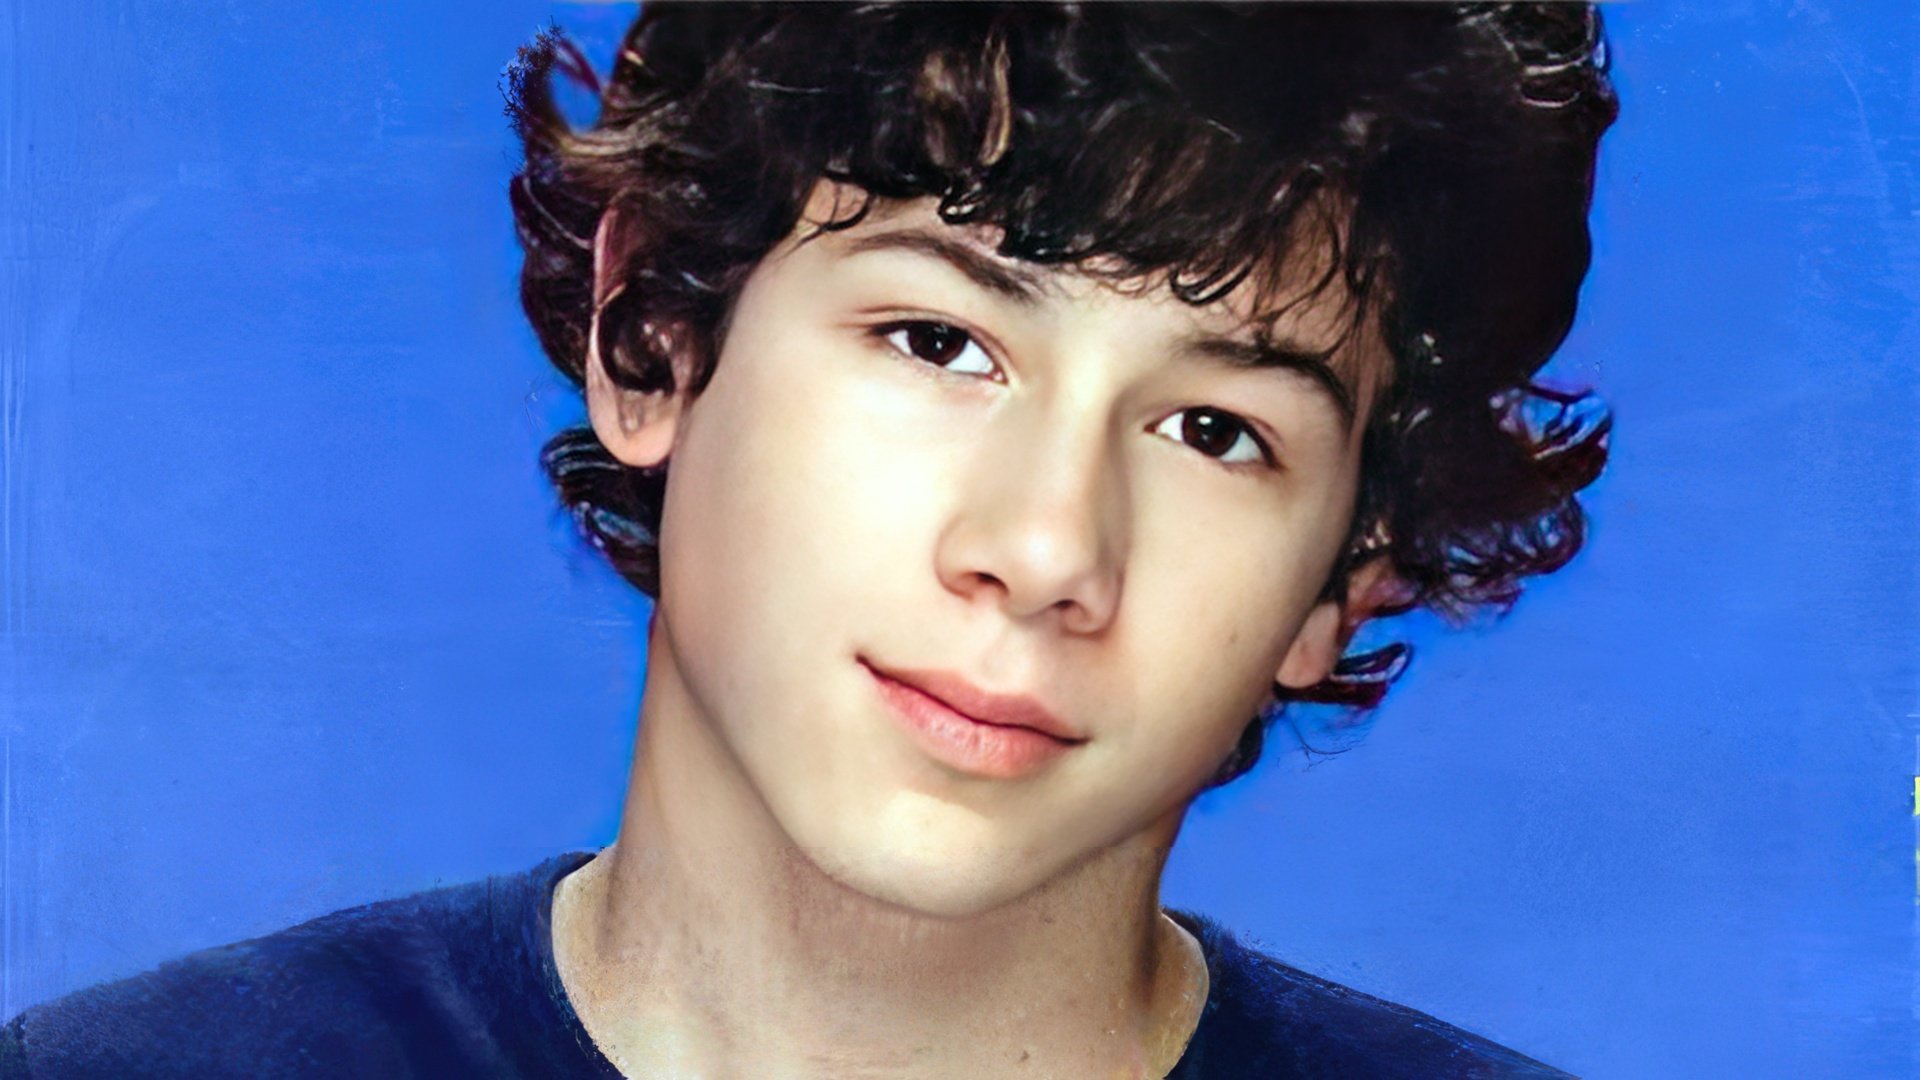 Nick Jonas as a child